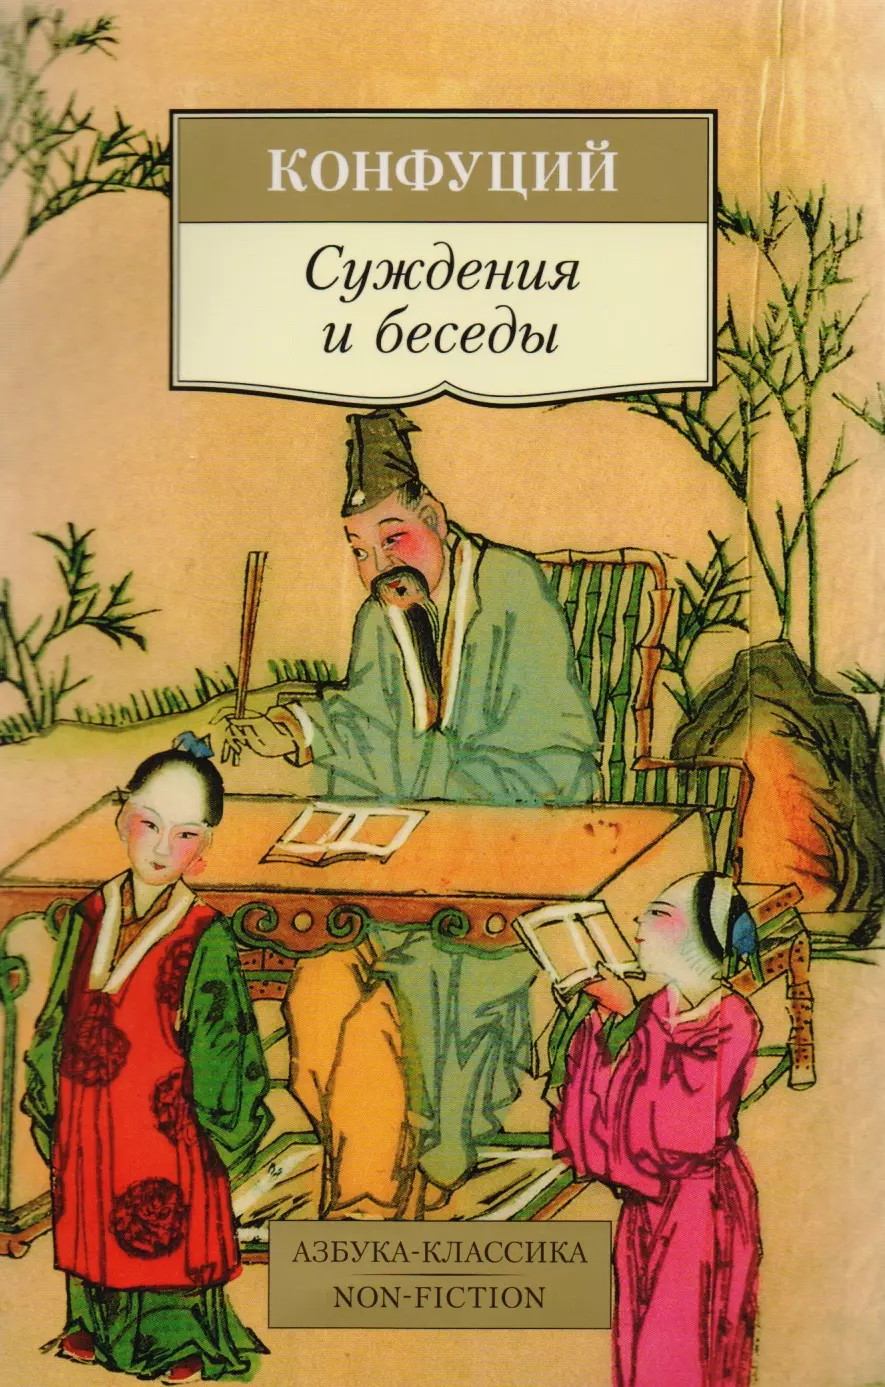 Конфуций - Суждения и беседы